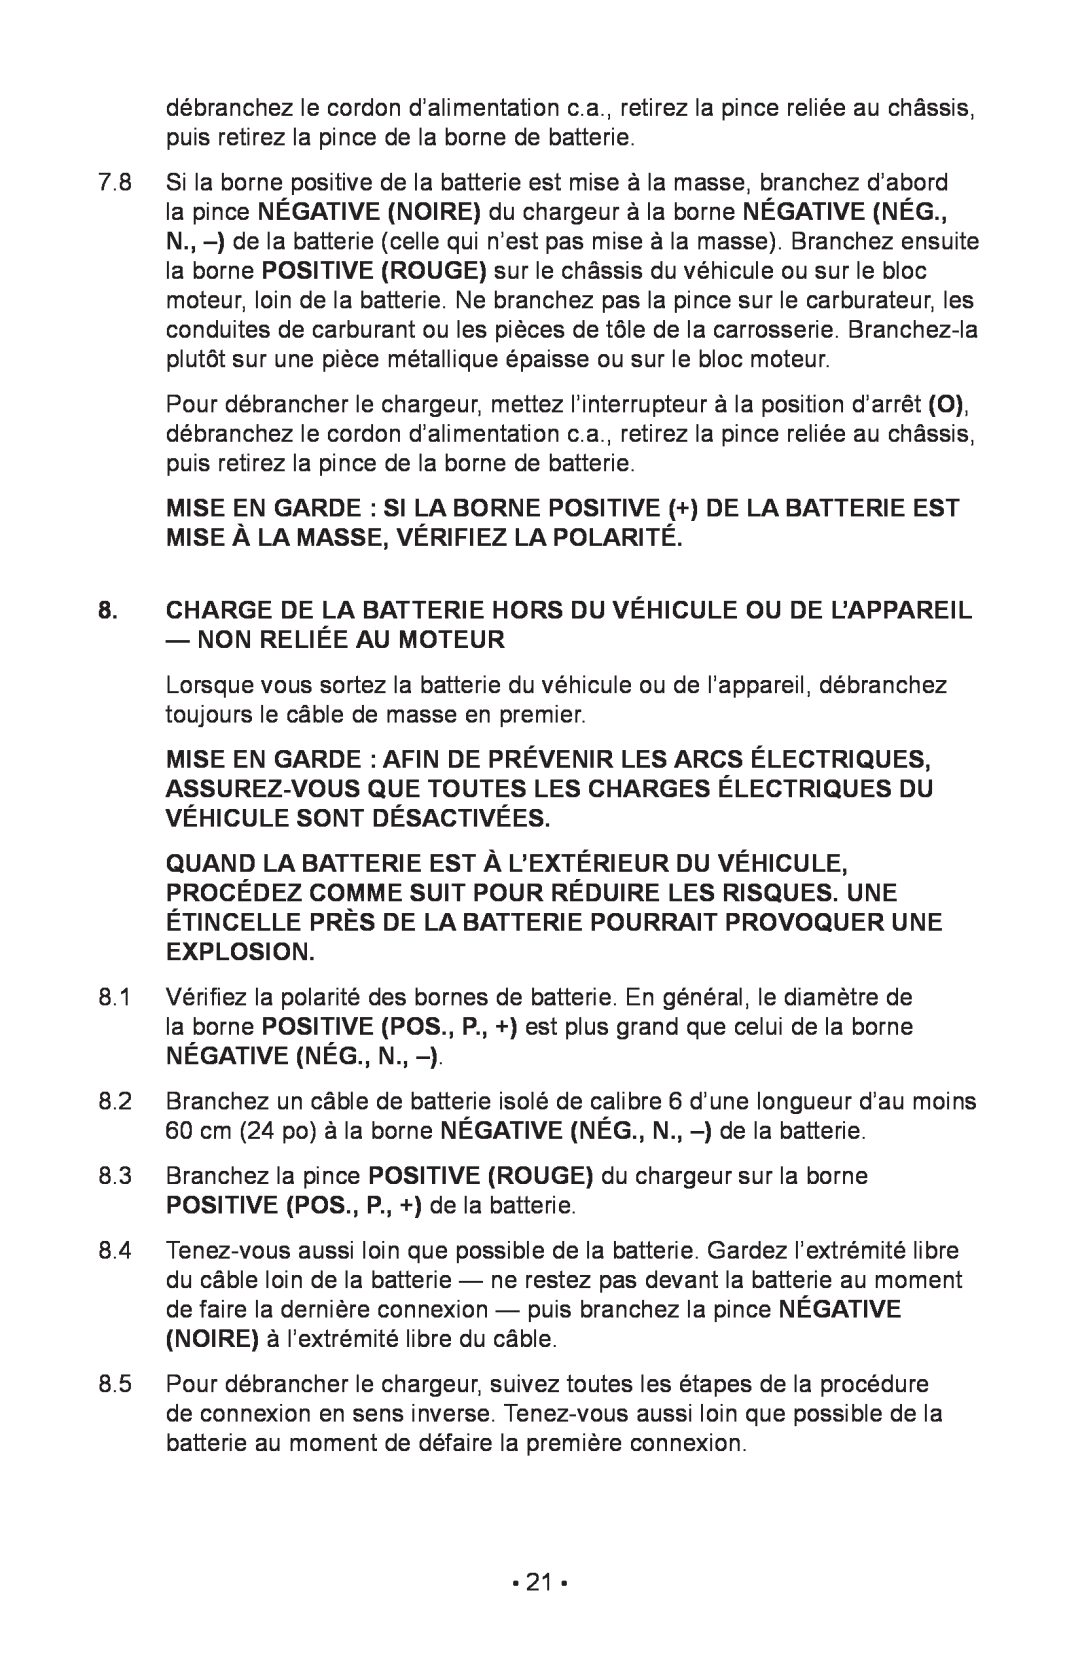 Schumacher 85-716 instruction manual Charge De La Batterie Hors Du Véhicule Ou De L’Appareil 